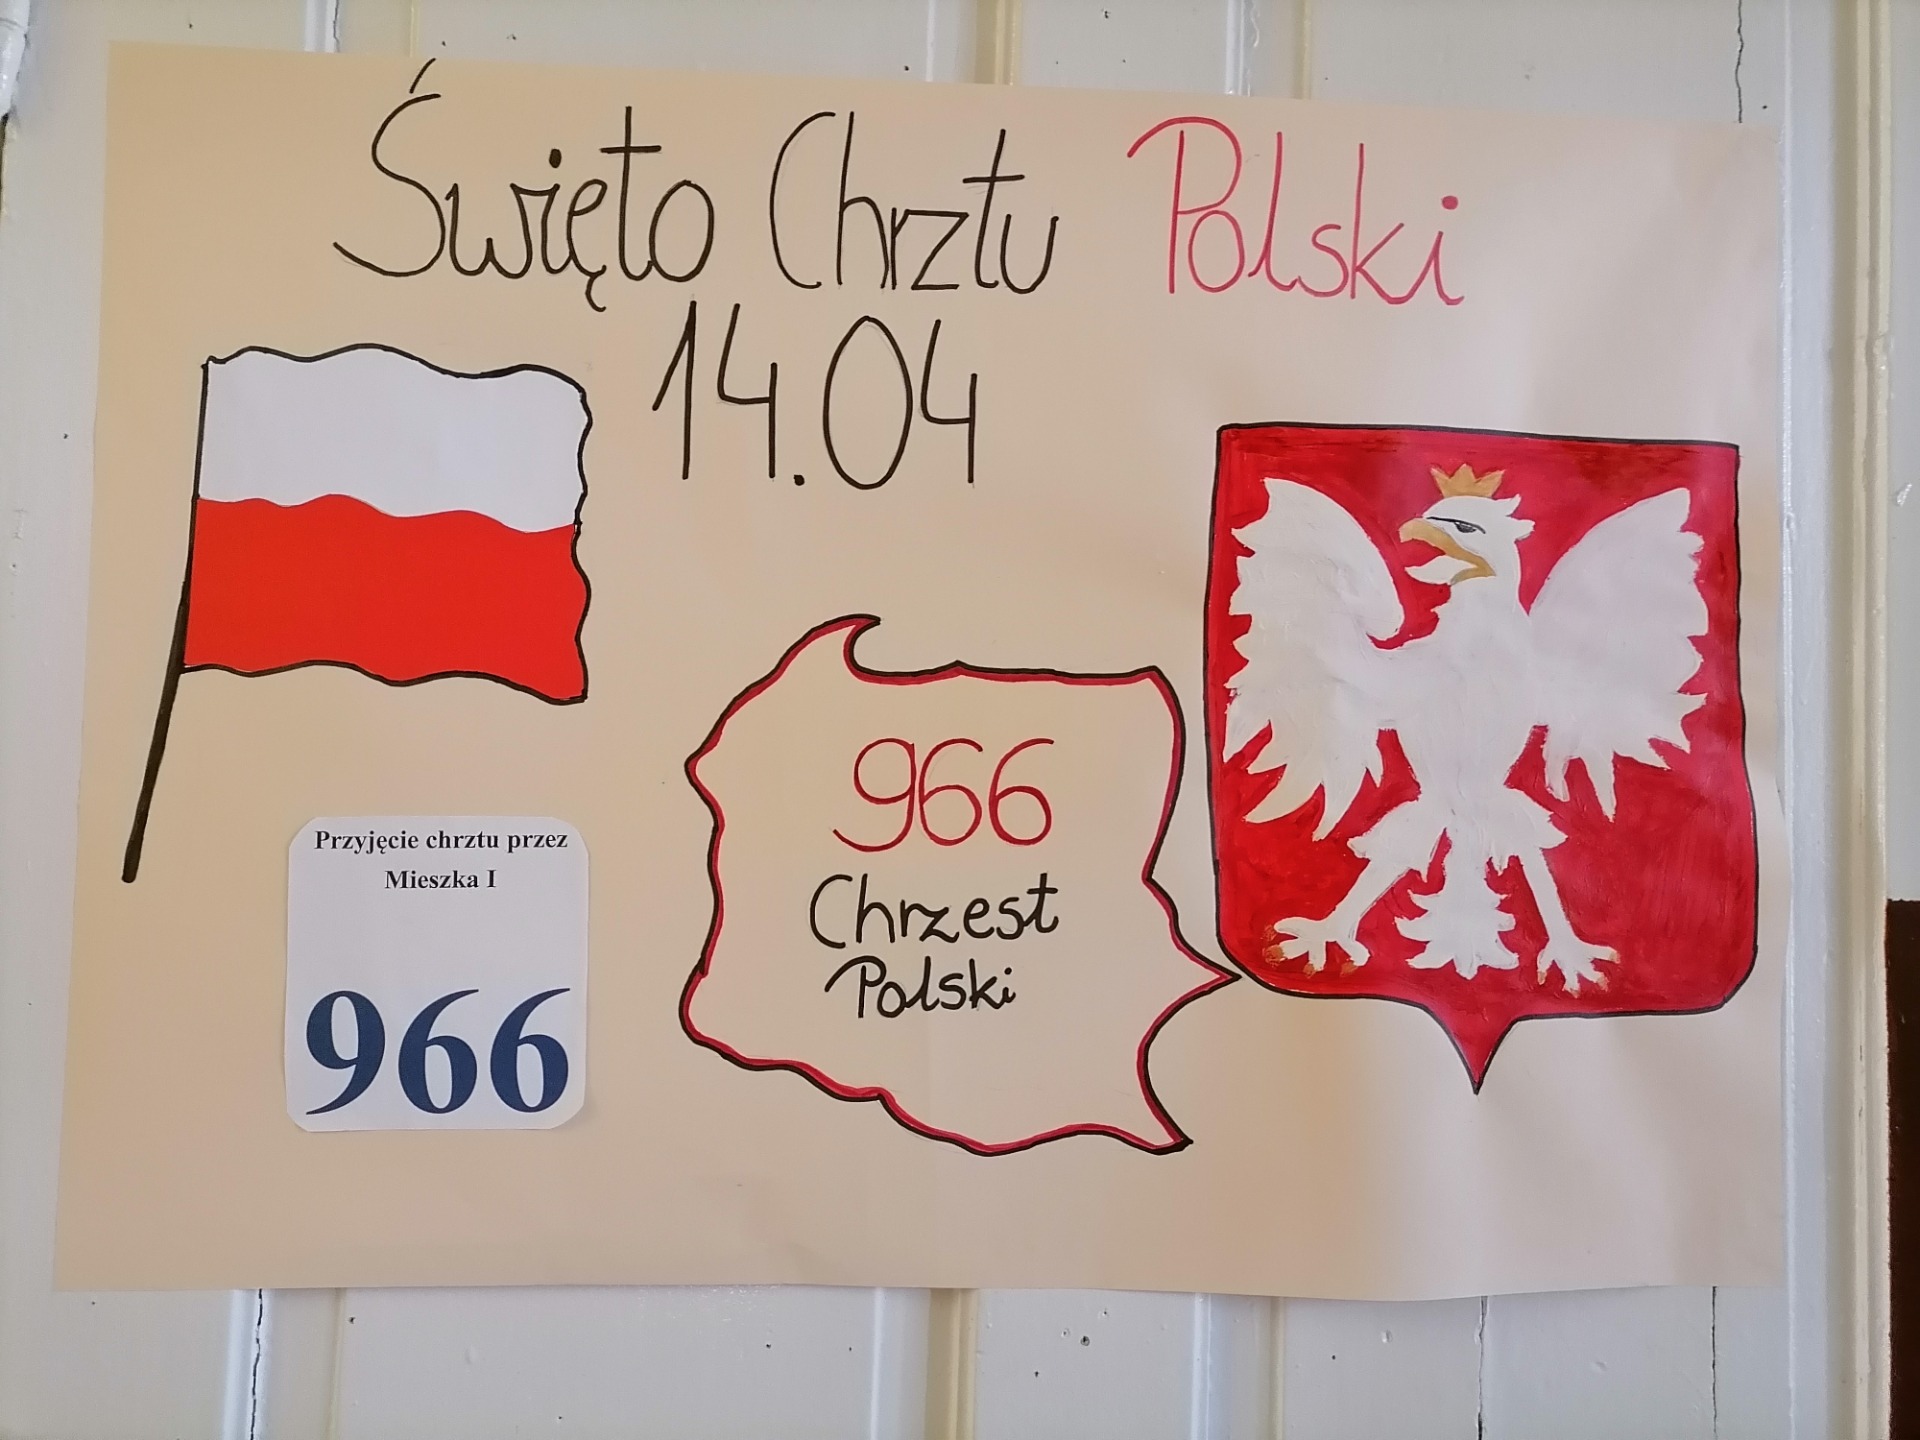 14.04  Święto Chrztu Polski - Obrazek 2